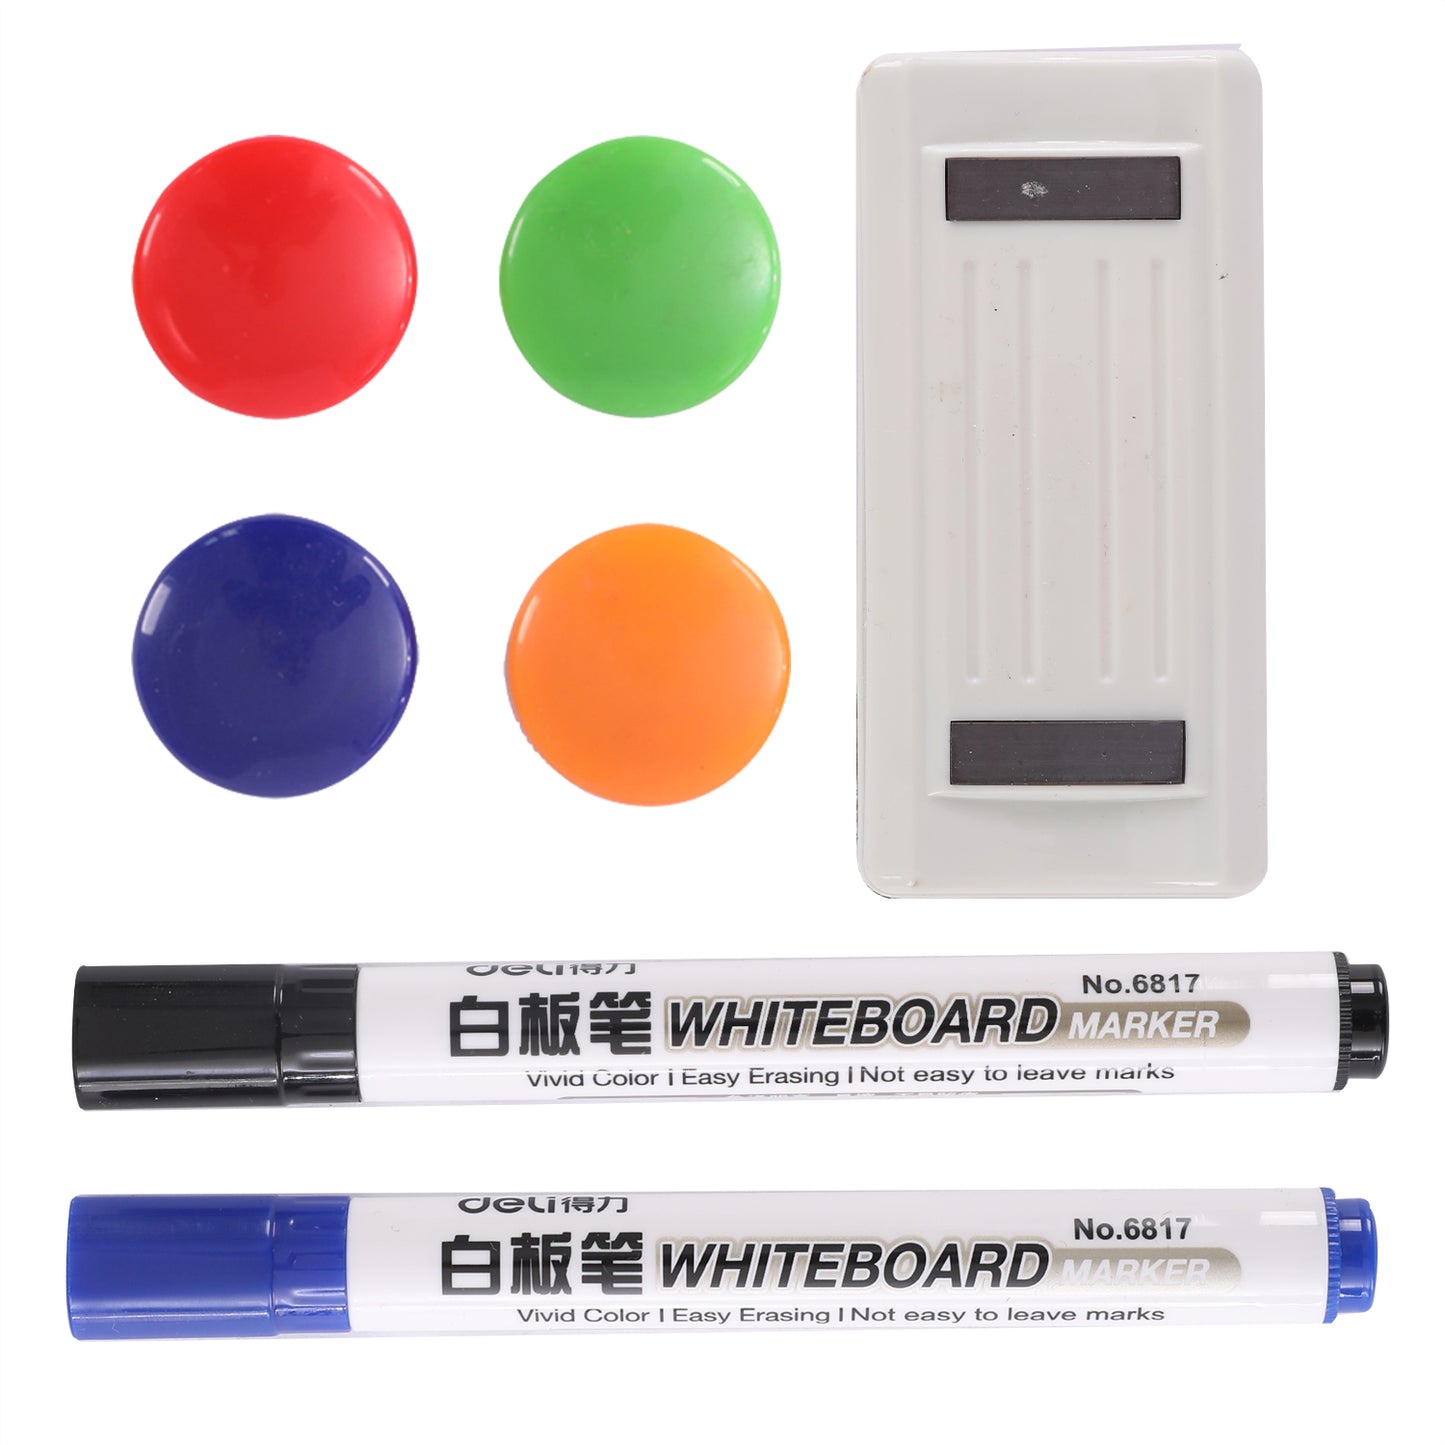 Deli Combo Mobile Whiteboard & Chalkboard 600x900mm